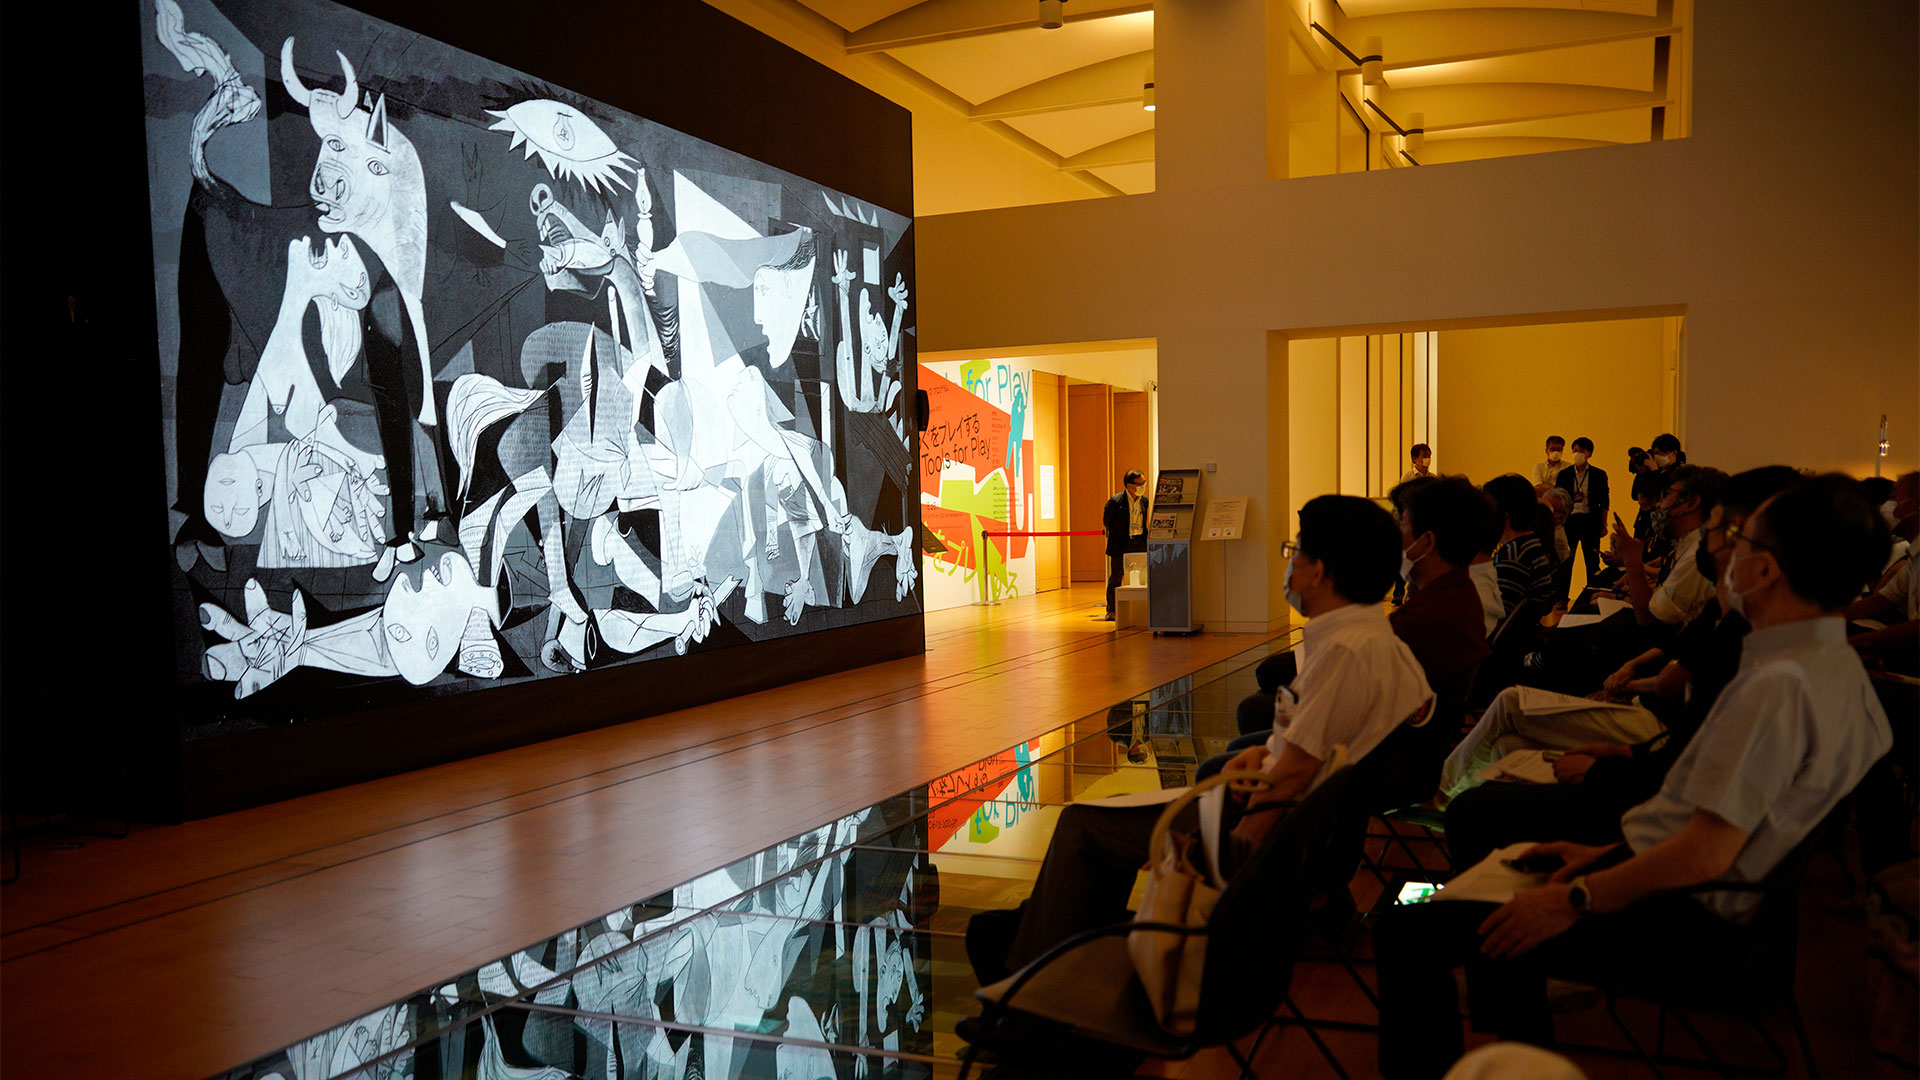 El evento '¡Guernica is here! es un potente espacio de imágenes 8K' en el Centro de Intercomunicación NTT (ICC) de Tokio, Japón